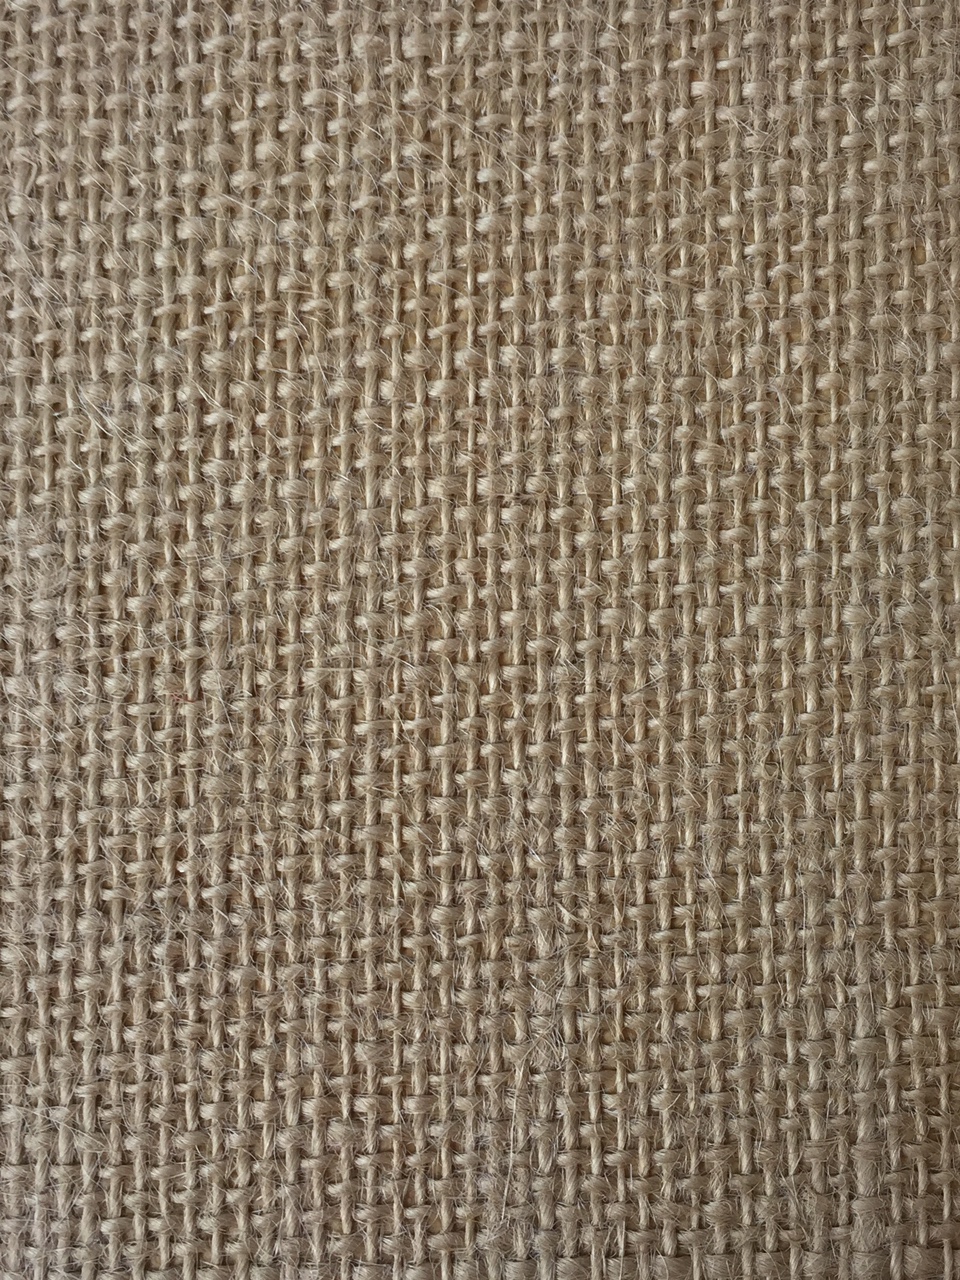 ヘッセの壁紙,褐色,織布,ベージュ,繊維,パターン